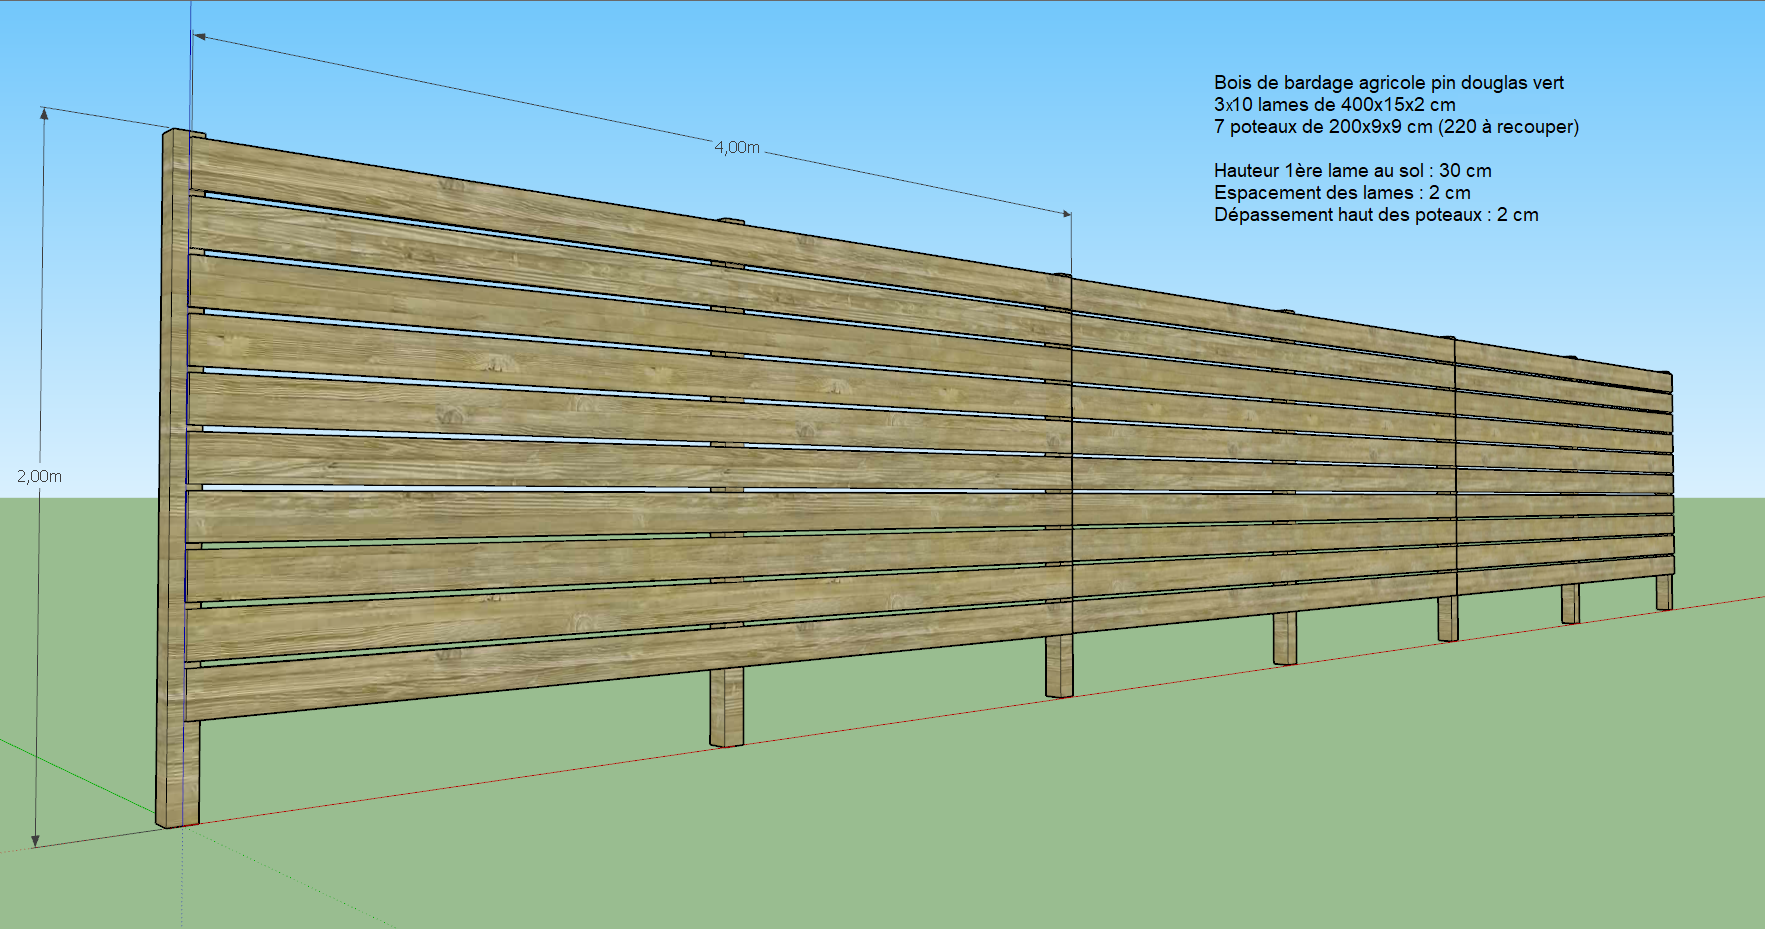 Cherche aide pour choisir quincaillerie clôture bois